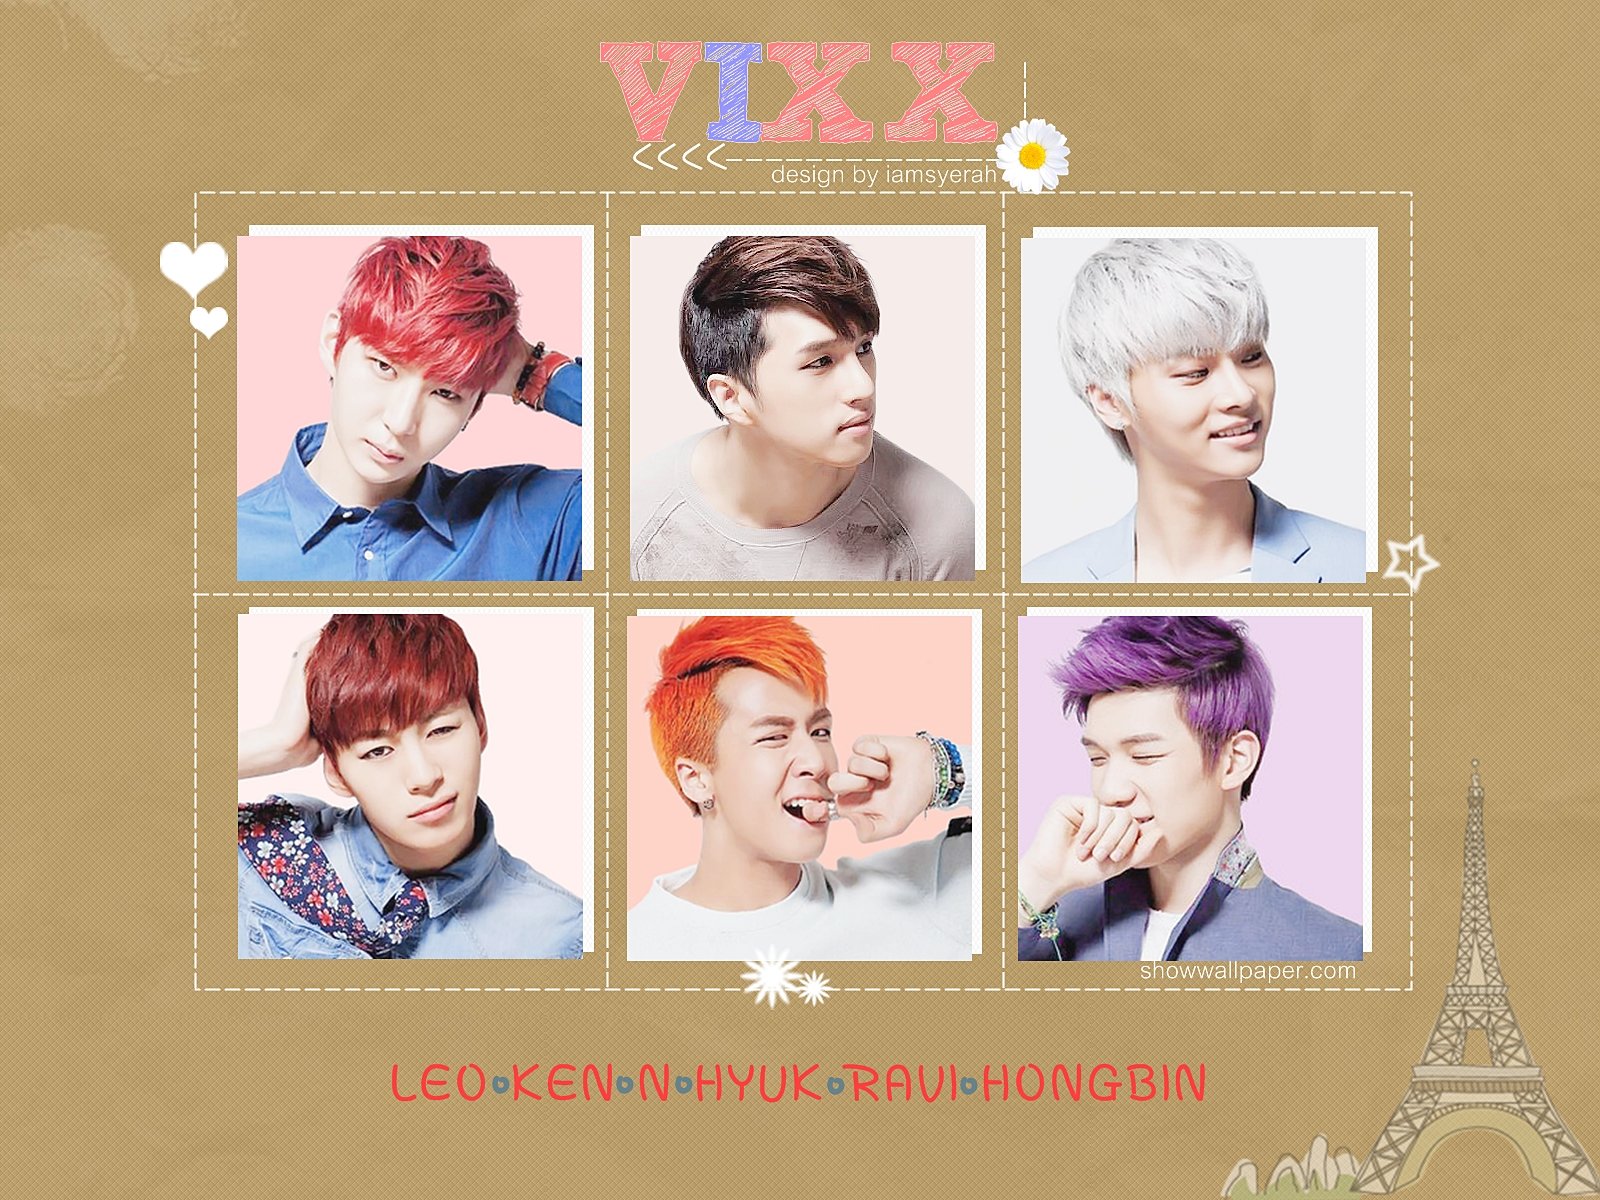 vixx, Kpop, K pop Wallpaper